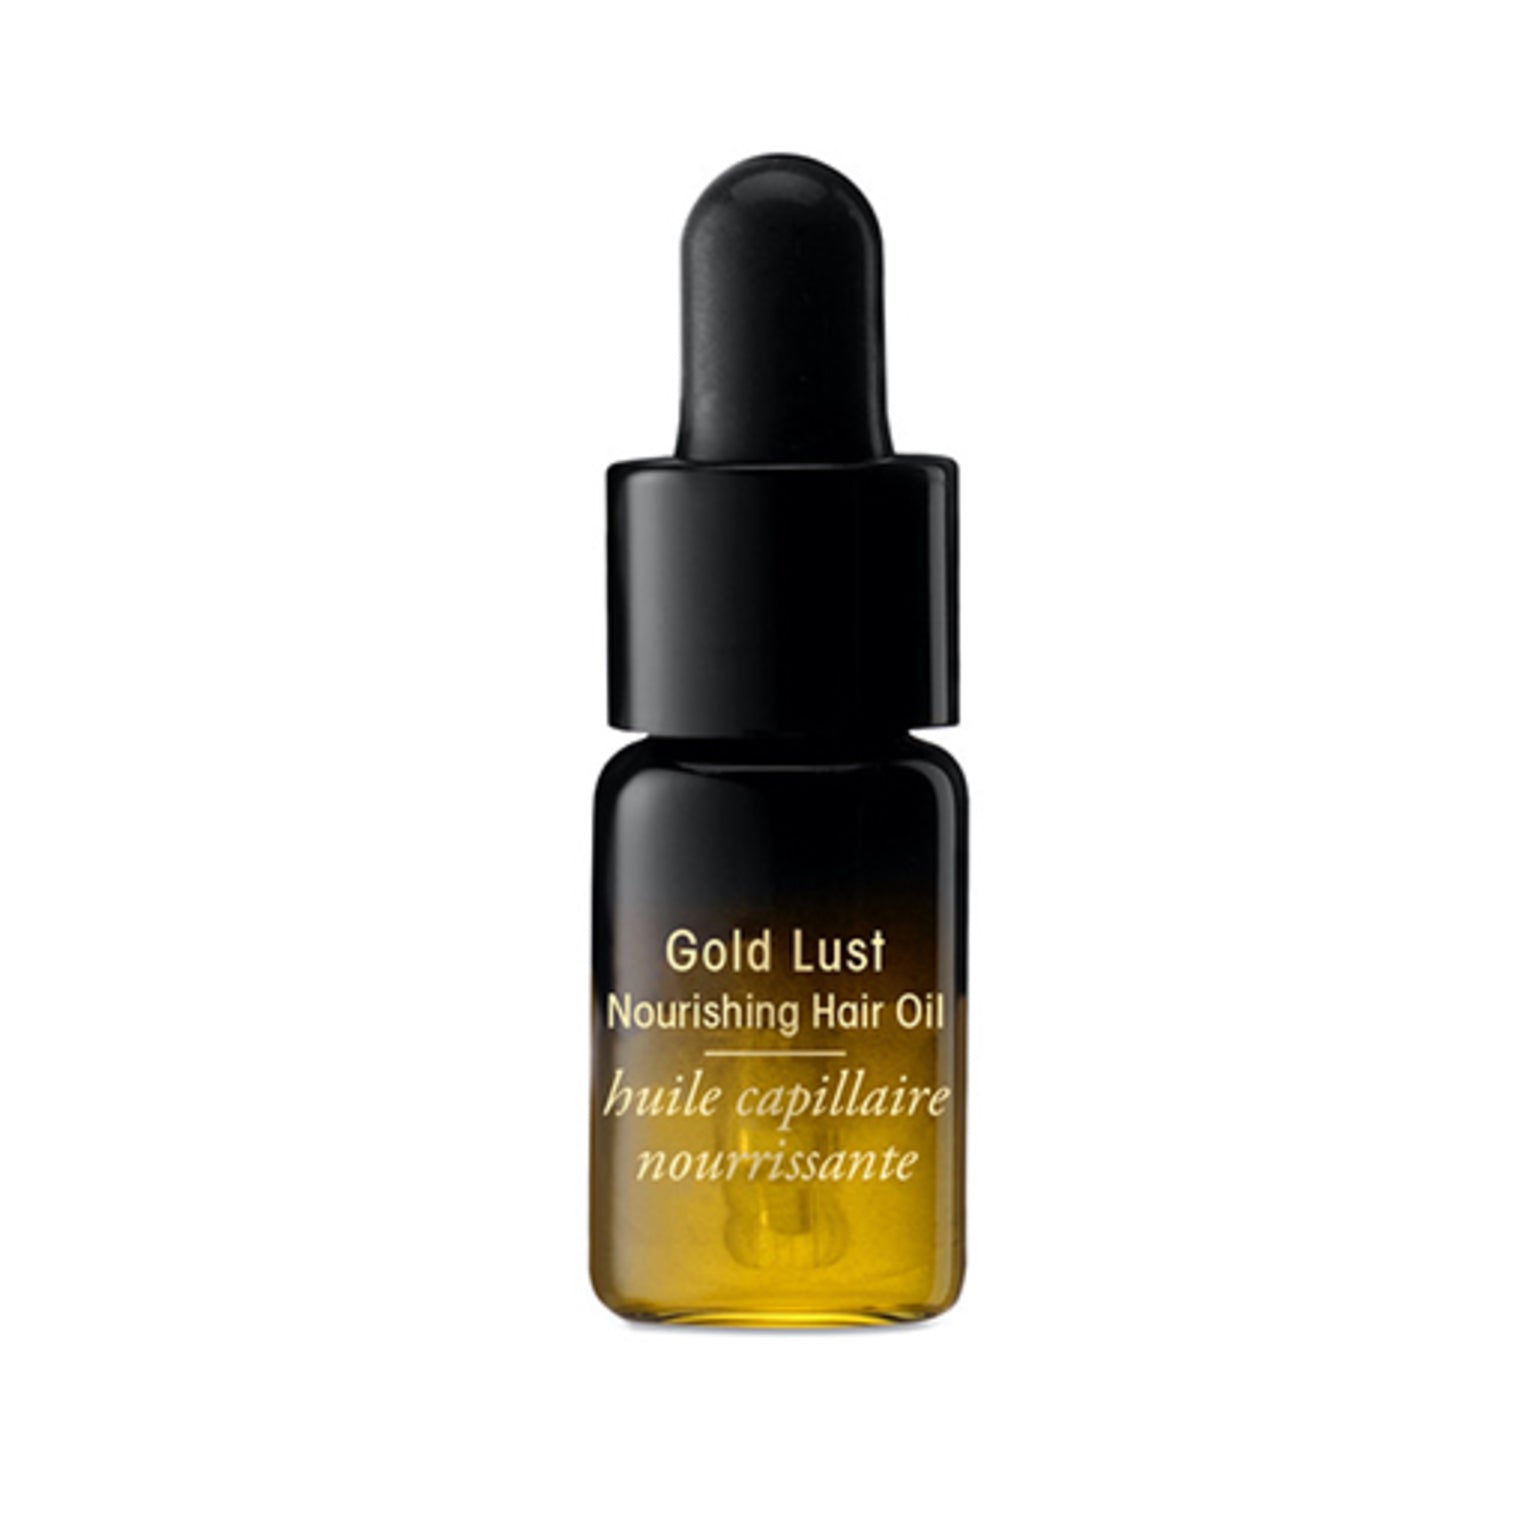 Gold Lust Nourishing Hair Oil Deluxe Sample